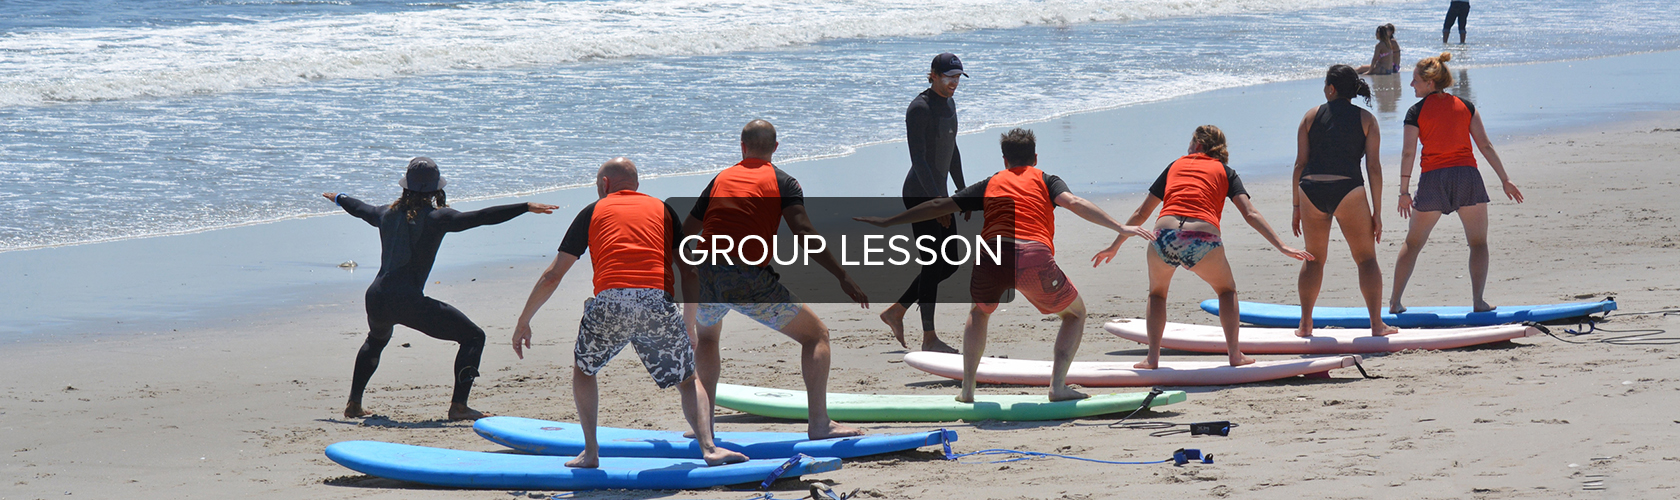 Group Lesson Slider 2018 3.jpg